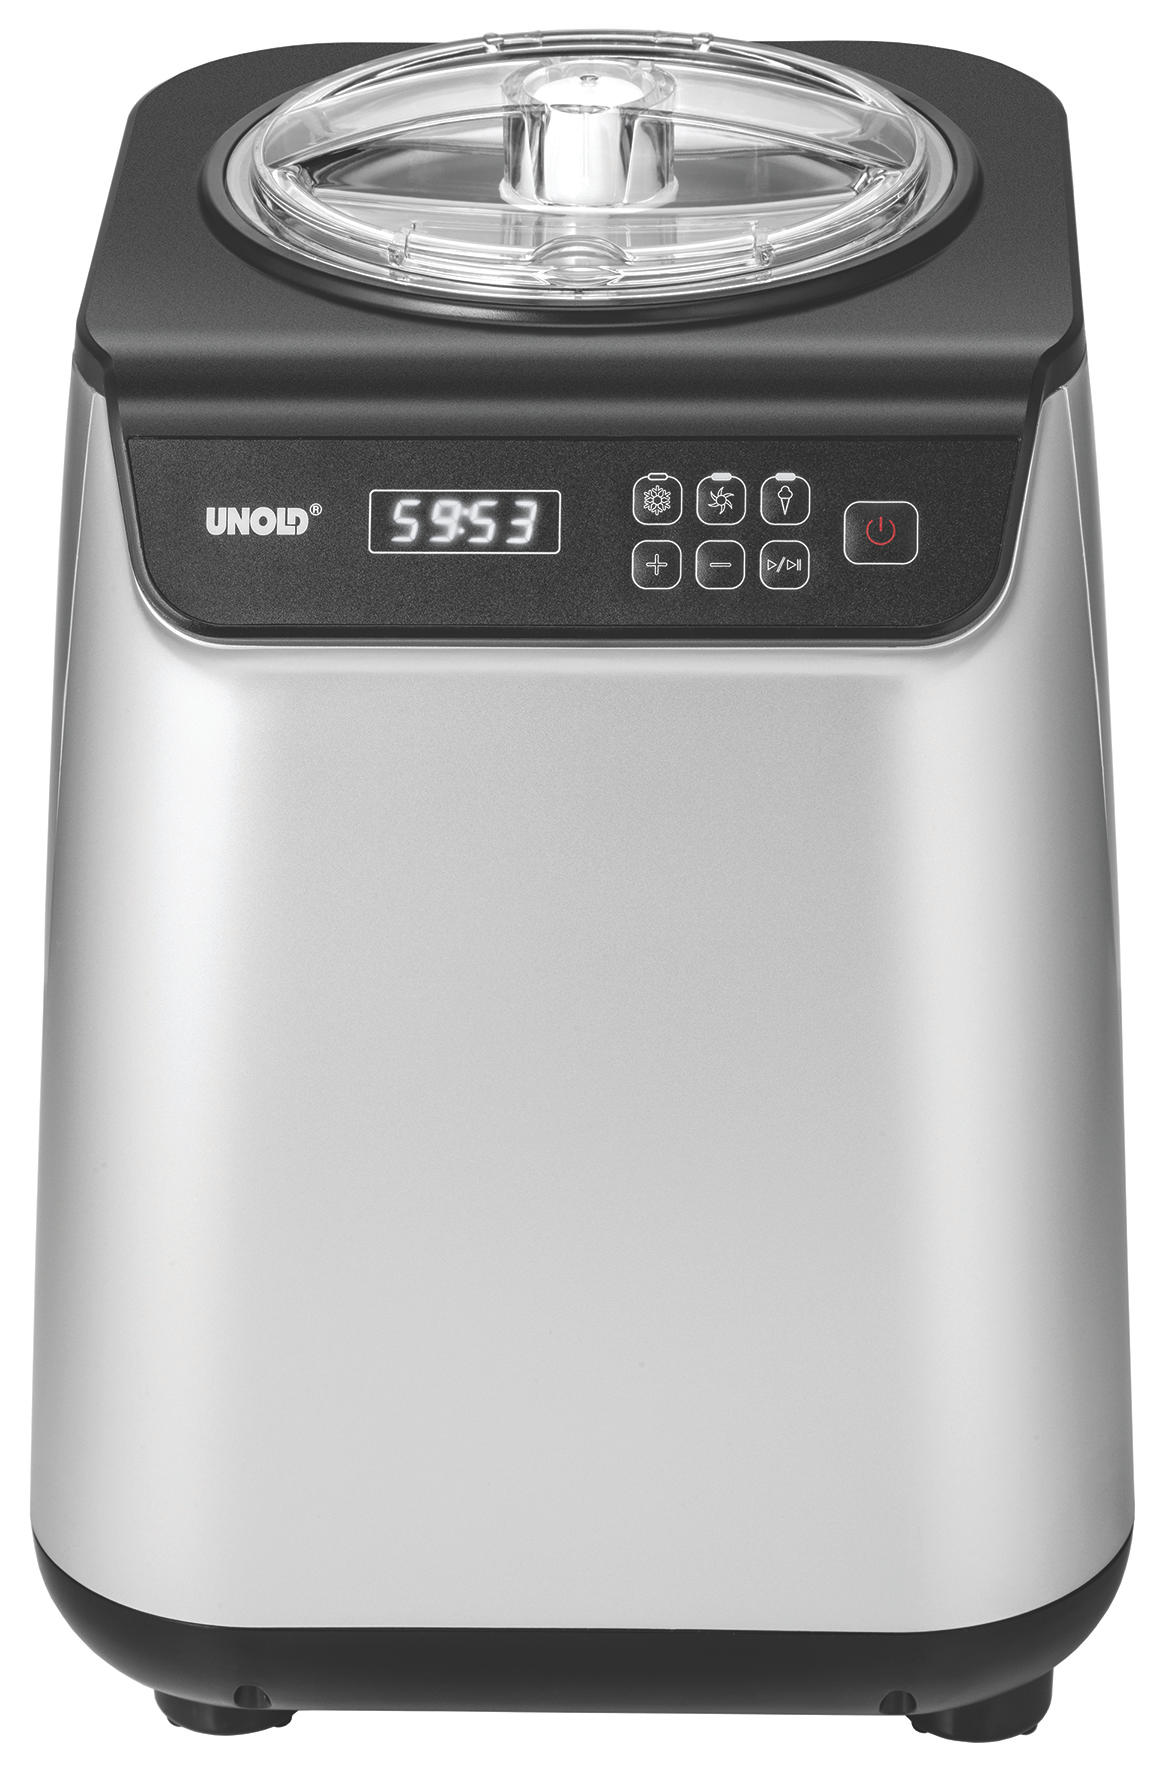 Silber/Schwarz) Eismaschine UNOLD Uno (135 48825 Watt,